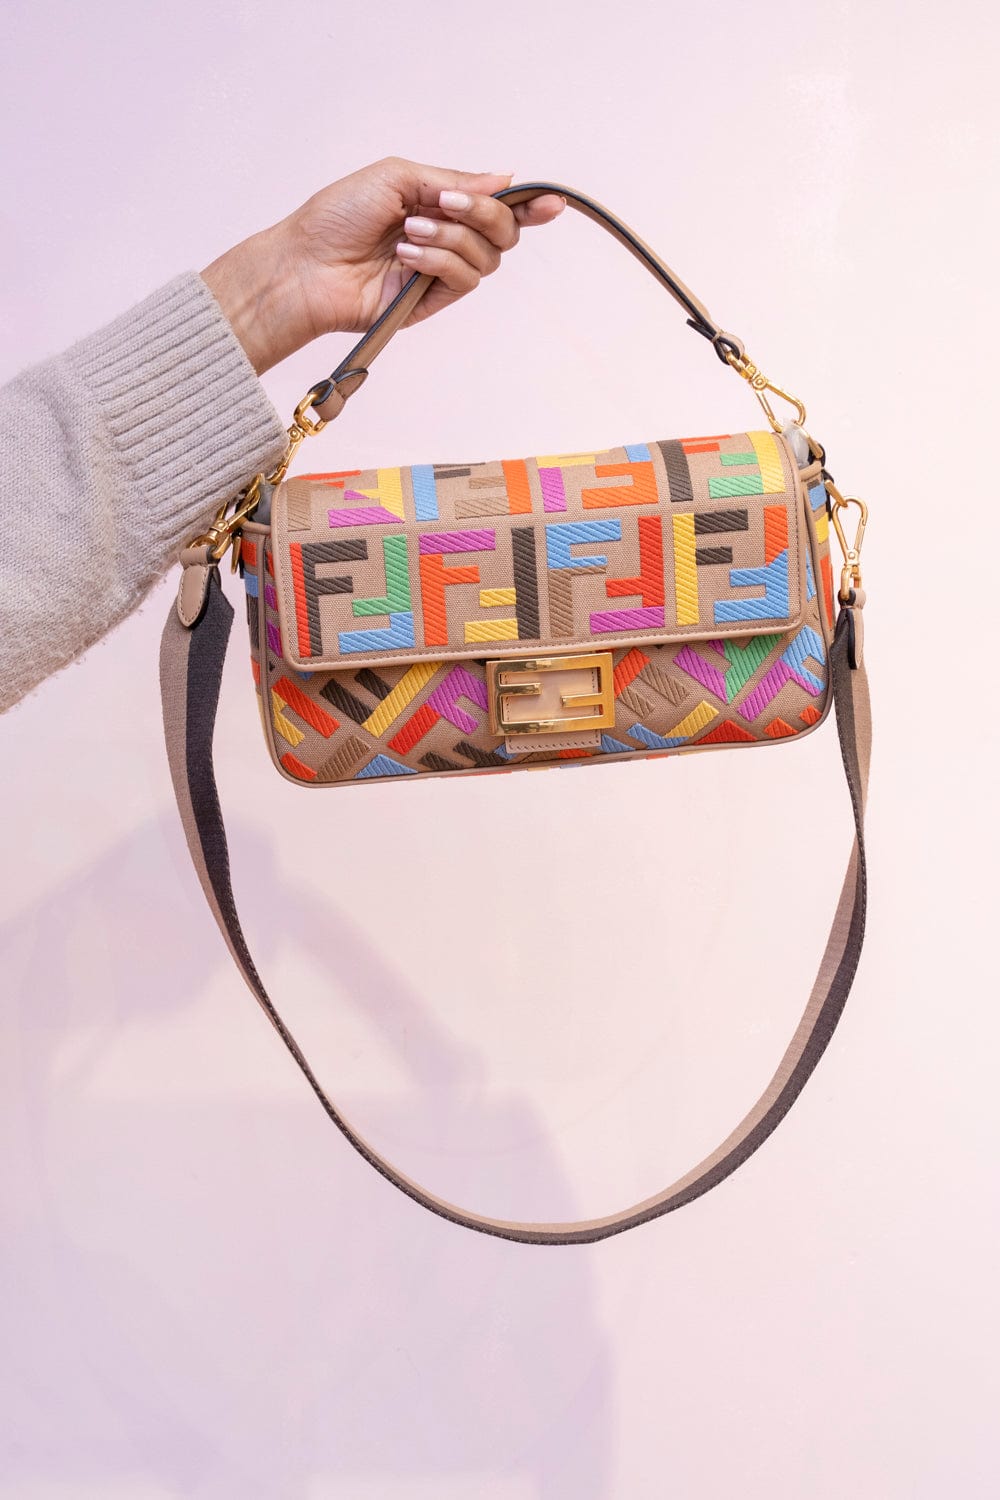 Fendi Baguette Bag Canvas Multicolor